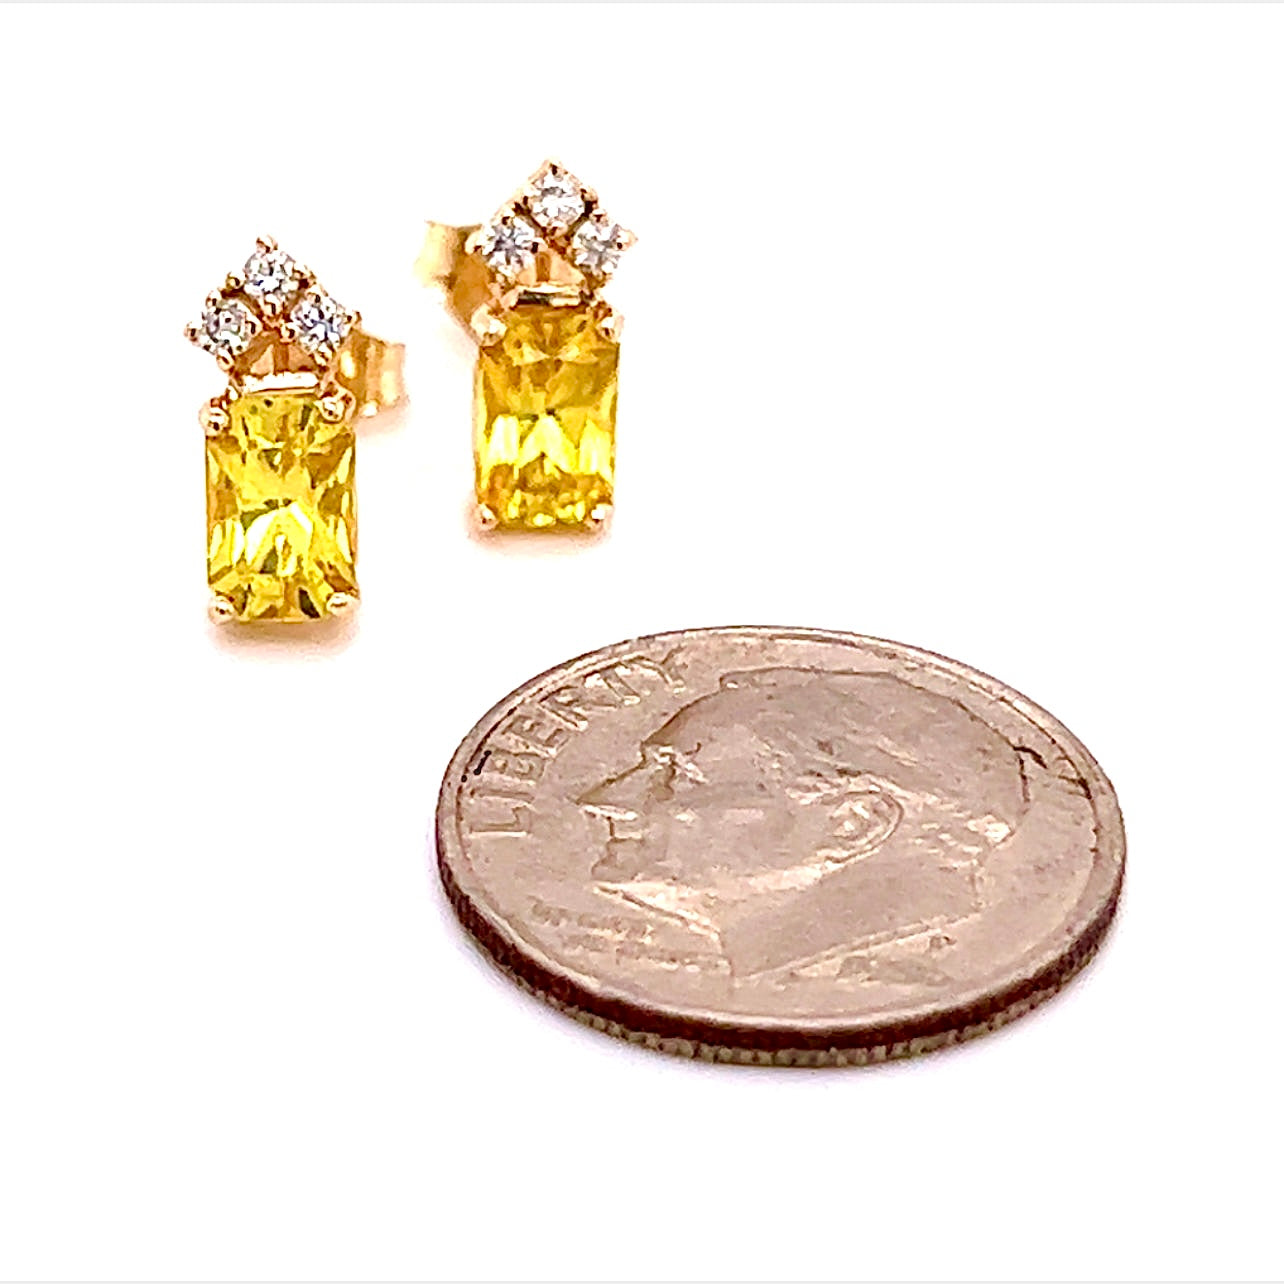 Natural Sapphire Diamond Earrings 14k Gold 1.74 TCW Certified $1,590 121259 - Certified Fine Jewelry